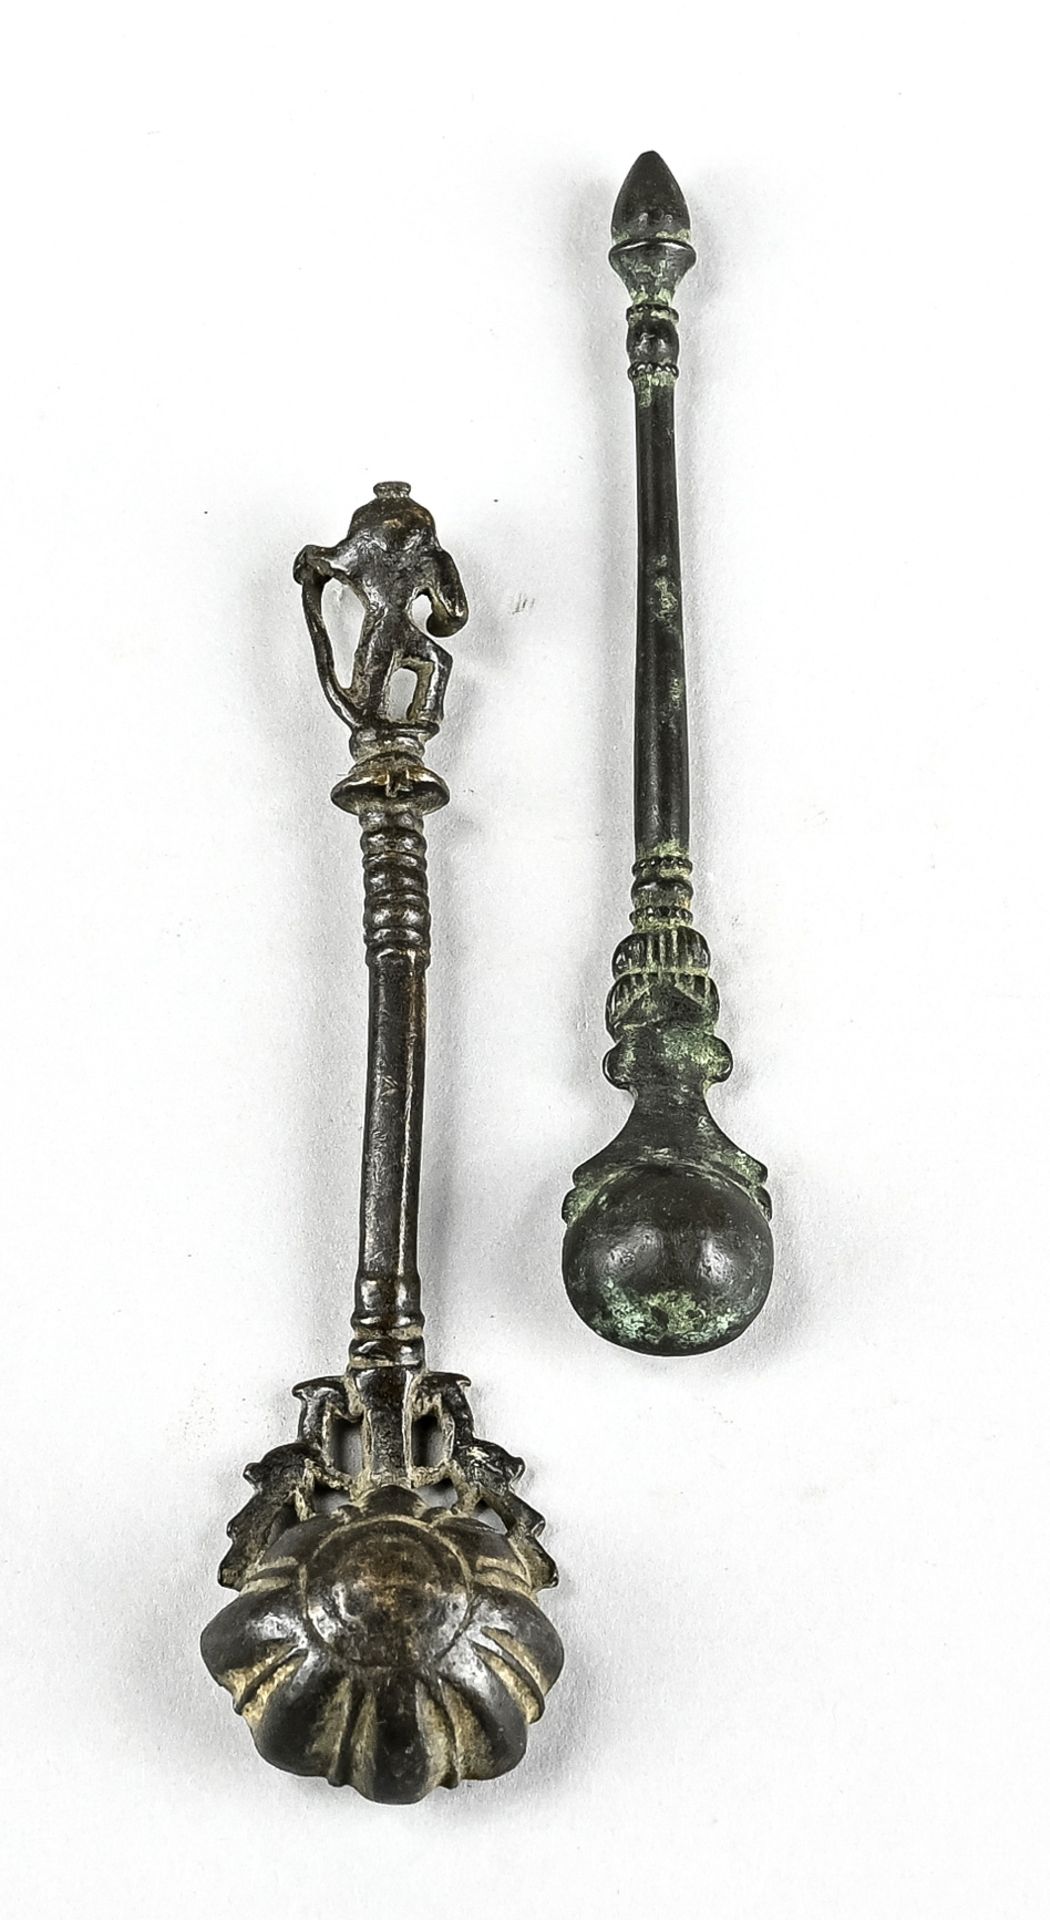 Paar Kerzenlöscher, Deutschland, 19. Jh., Bronze, Länge 14 cm - Bild 2 aus 3